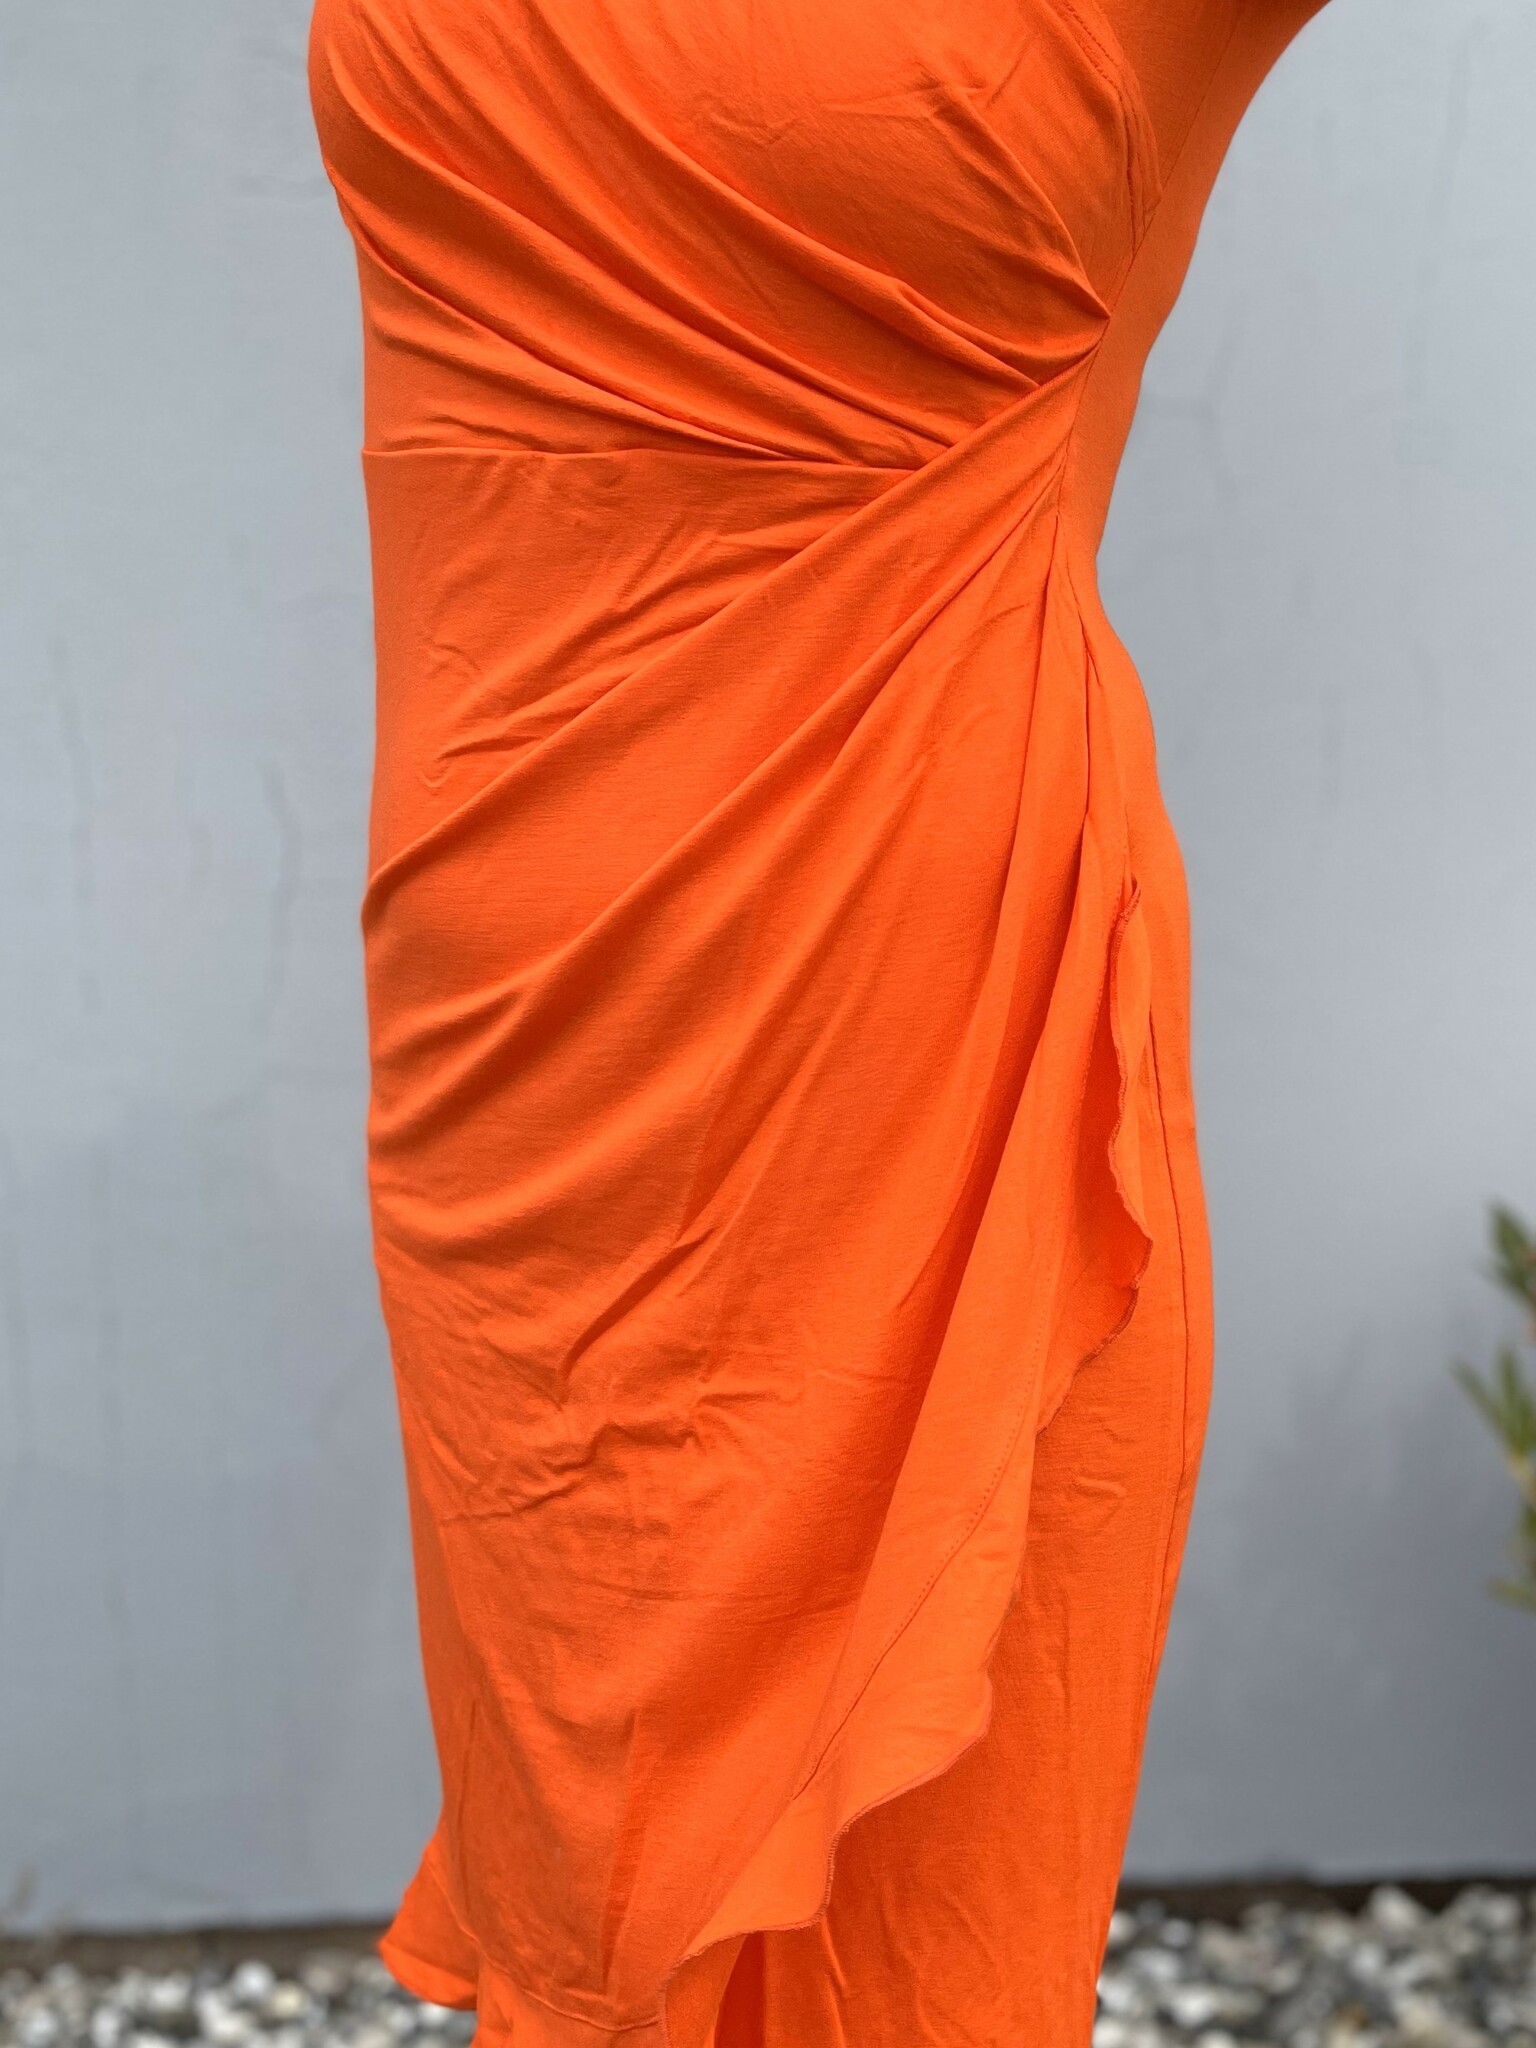 Skön trikåklänning I Klänning med volang I Klänning med stretch I Klänning i omlott I Omlottklänning I Orange klänning